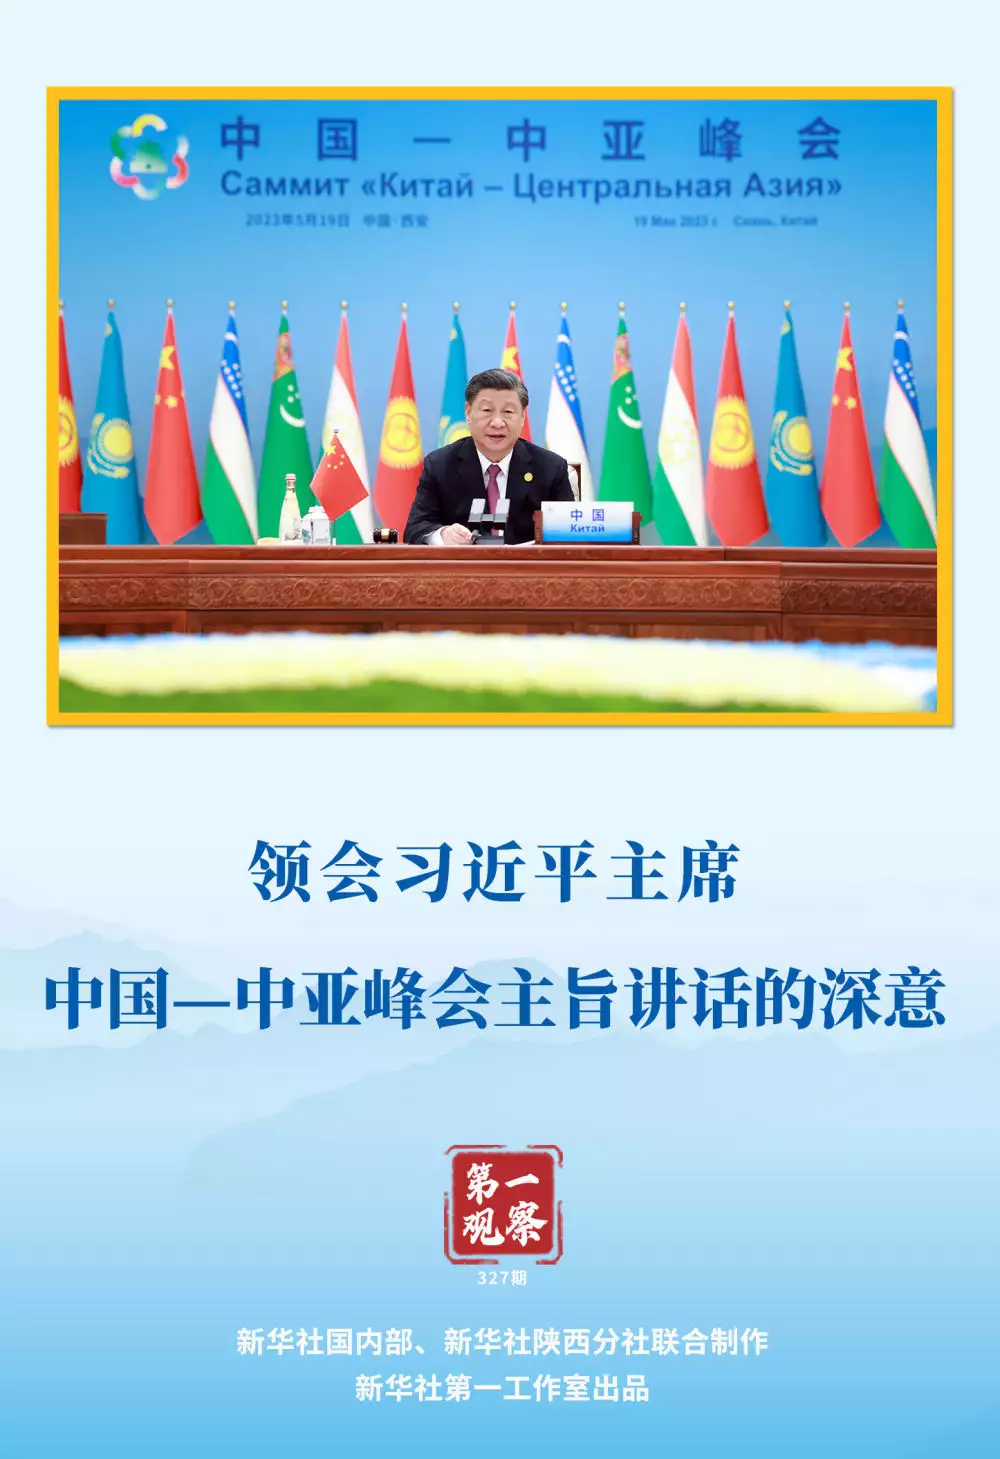 第一观察 | 领会习近平主席中国—中亚峰会主旨讲话的深意-中企新网-做企业新闻第一门户